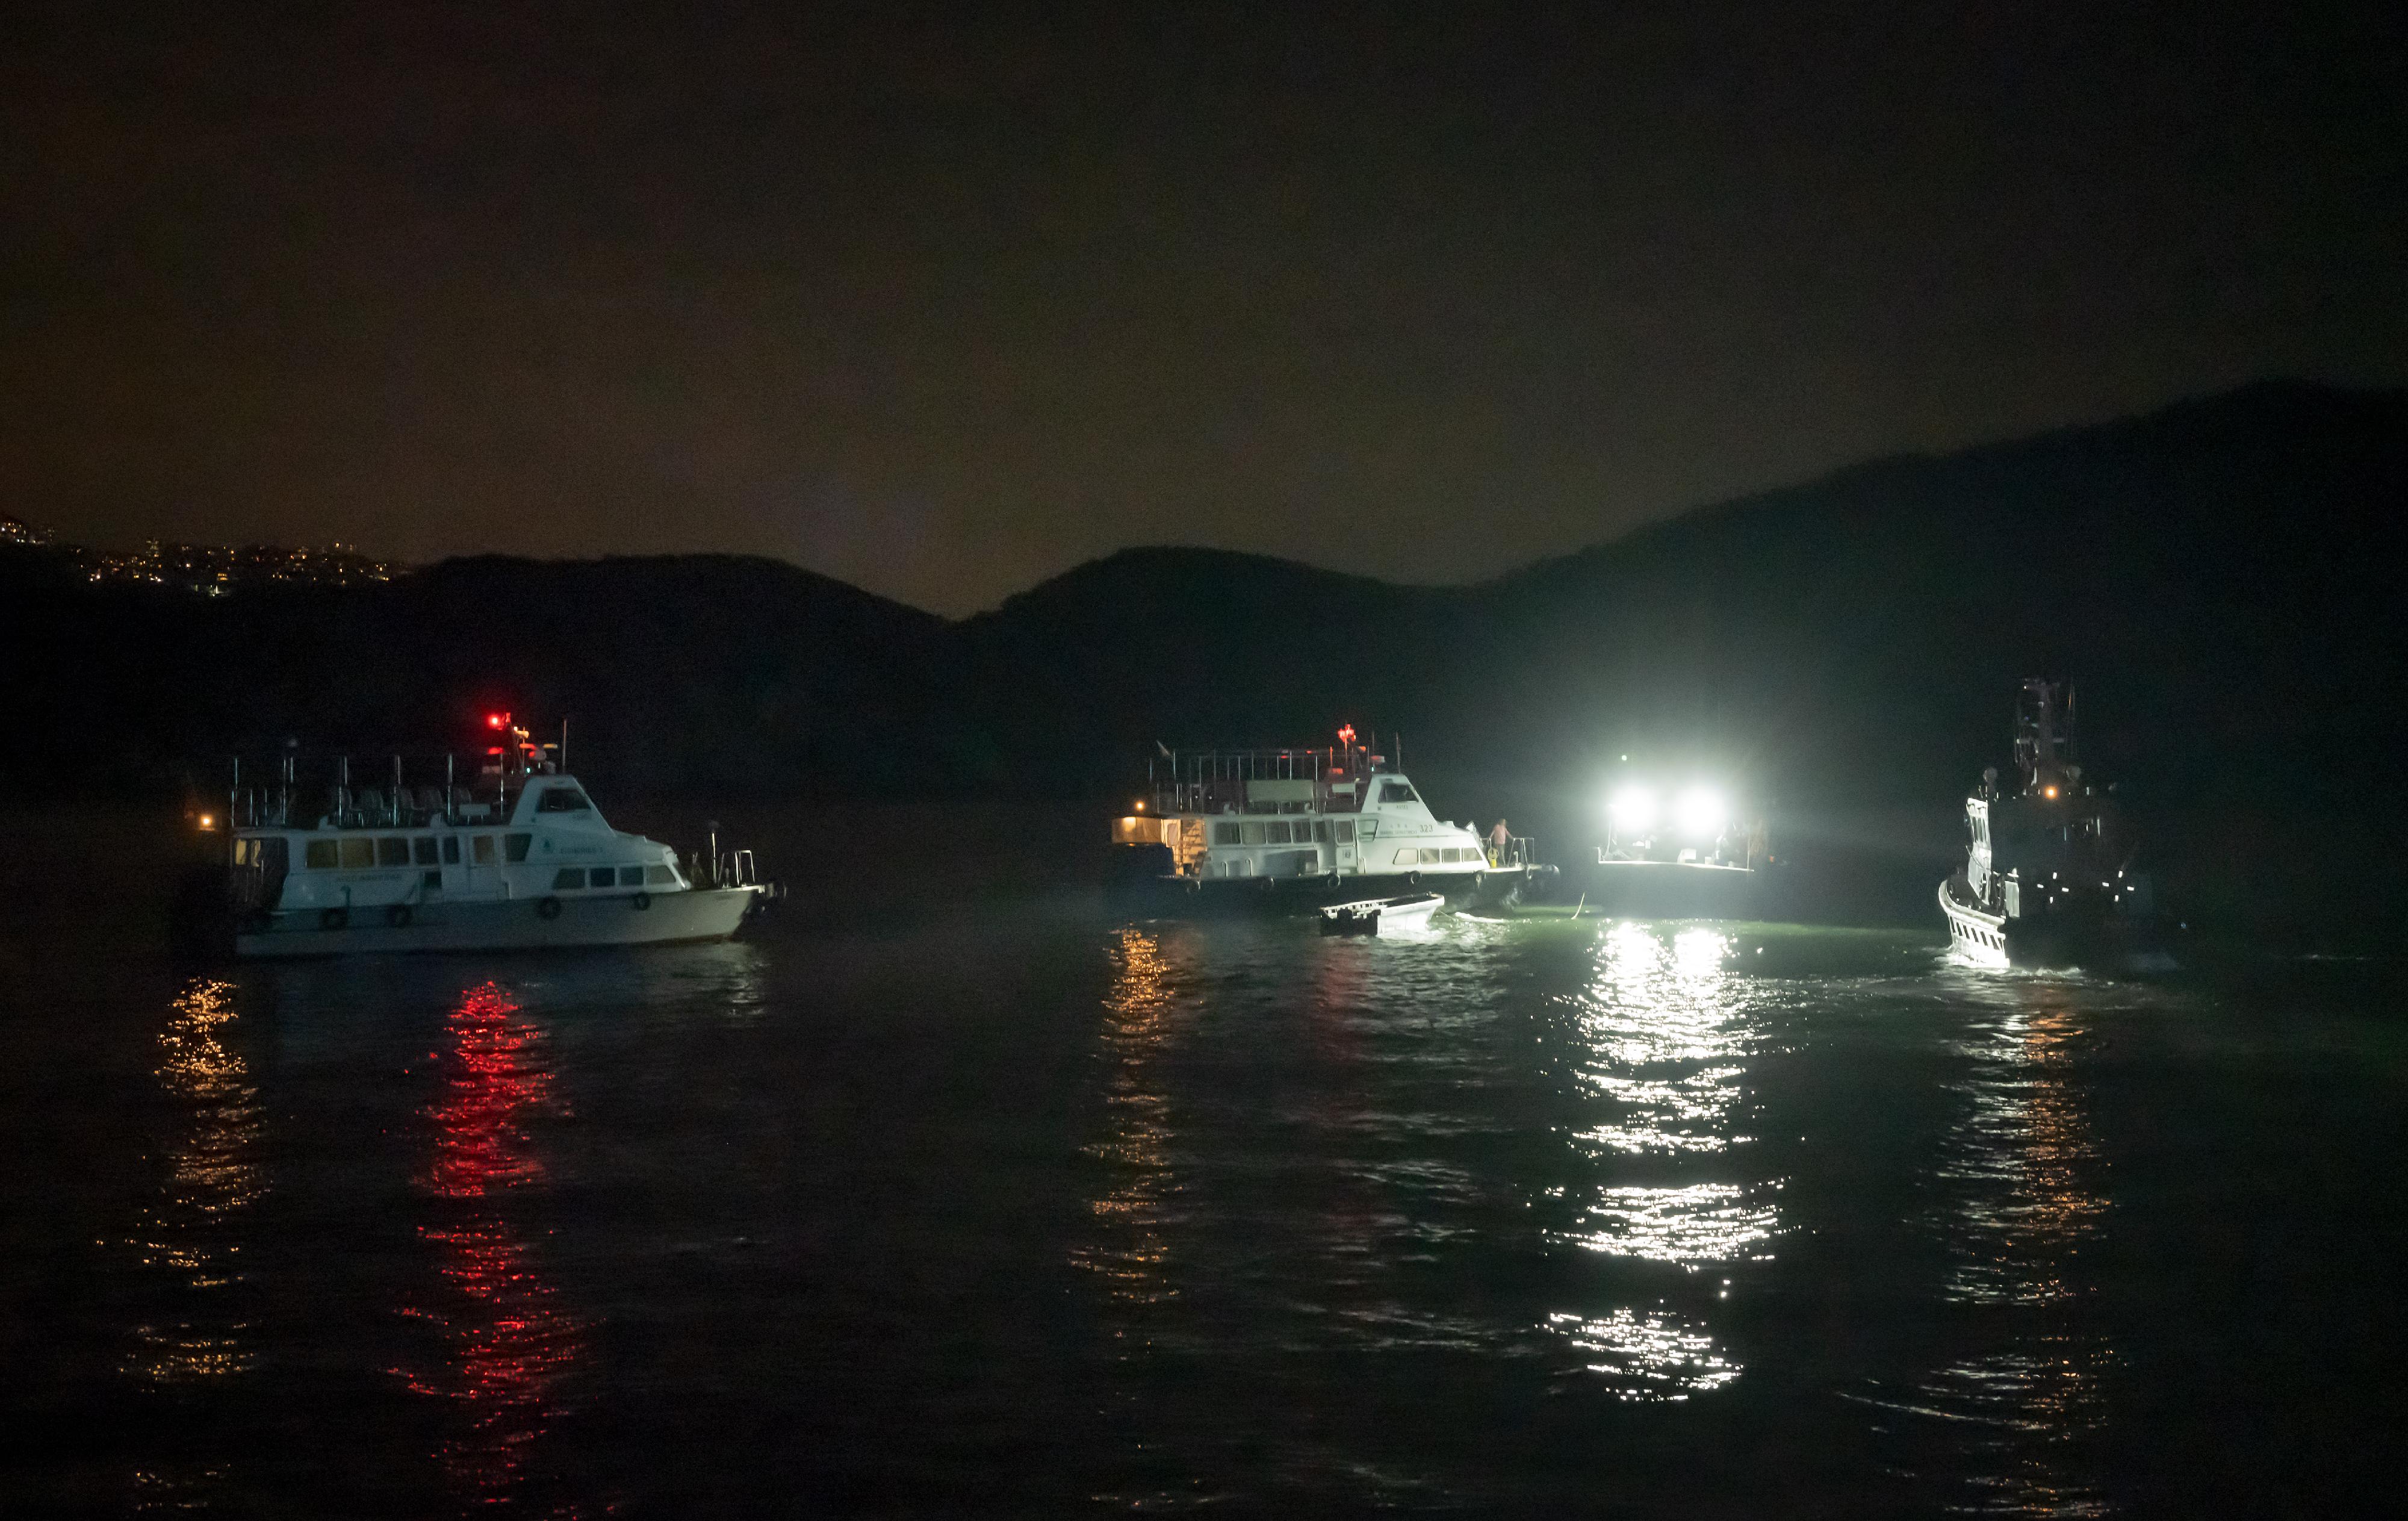 海事处昨晚（八月十日）联同警务处及渔农自然护理署在香港南部水域进行打击不适当使用光灯捕鱼及非法捕鱼的联合行动。图示三个部门的船只在联合行动中驶近一艘渔船，进行检查。